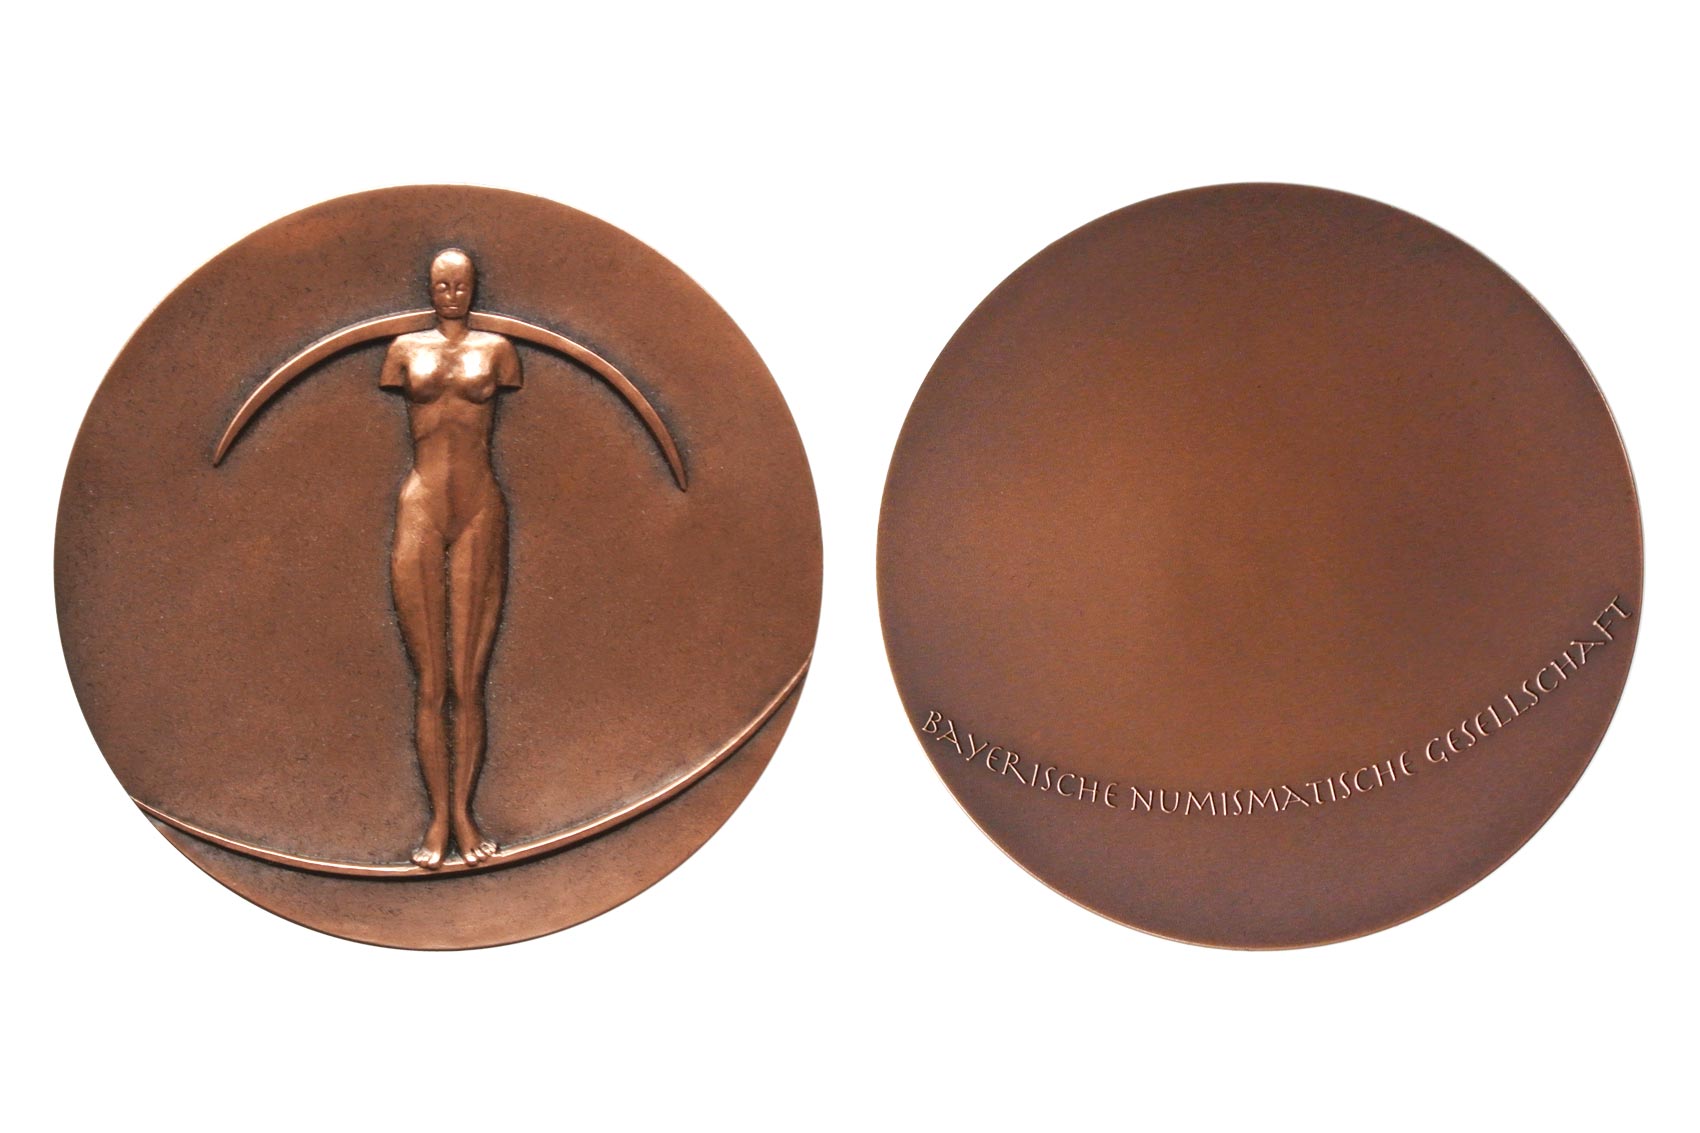 Medaille 2017 für die Bayerische Numismatische Gesellschaft e.V. in Bronze